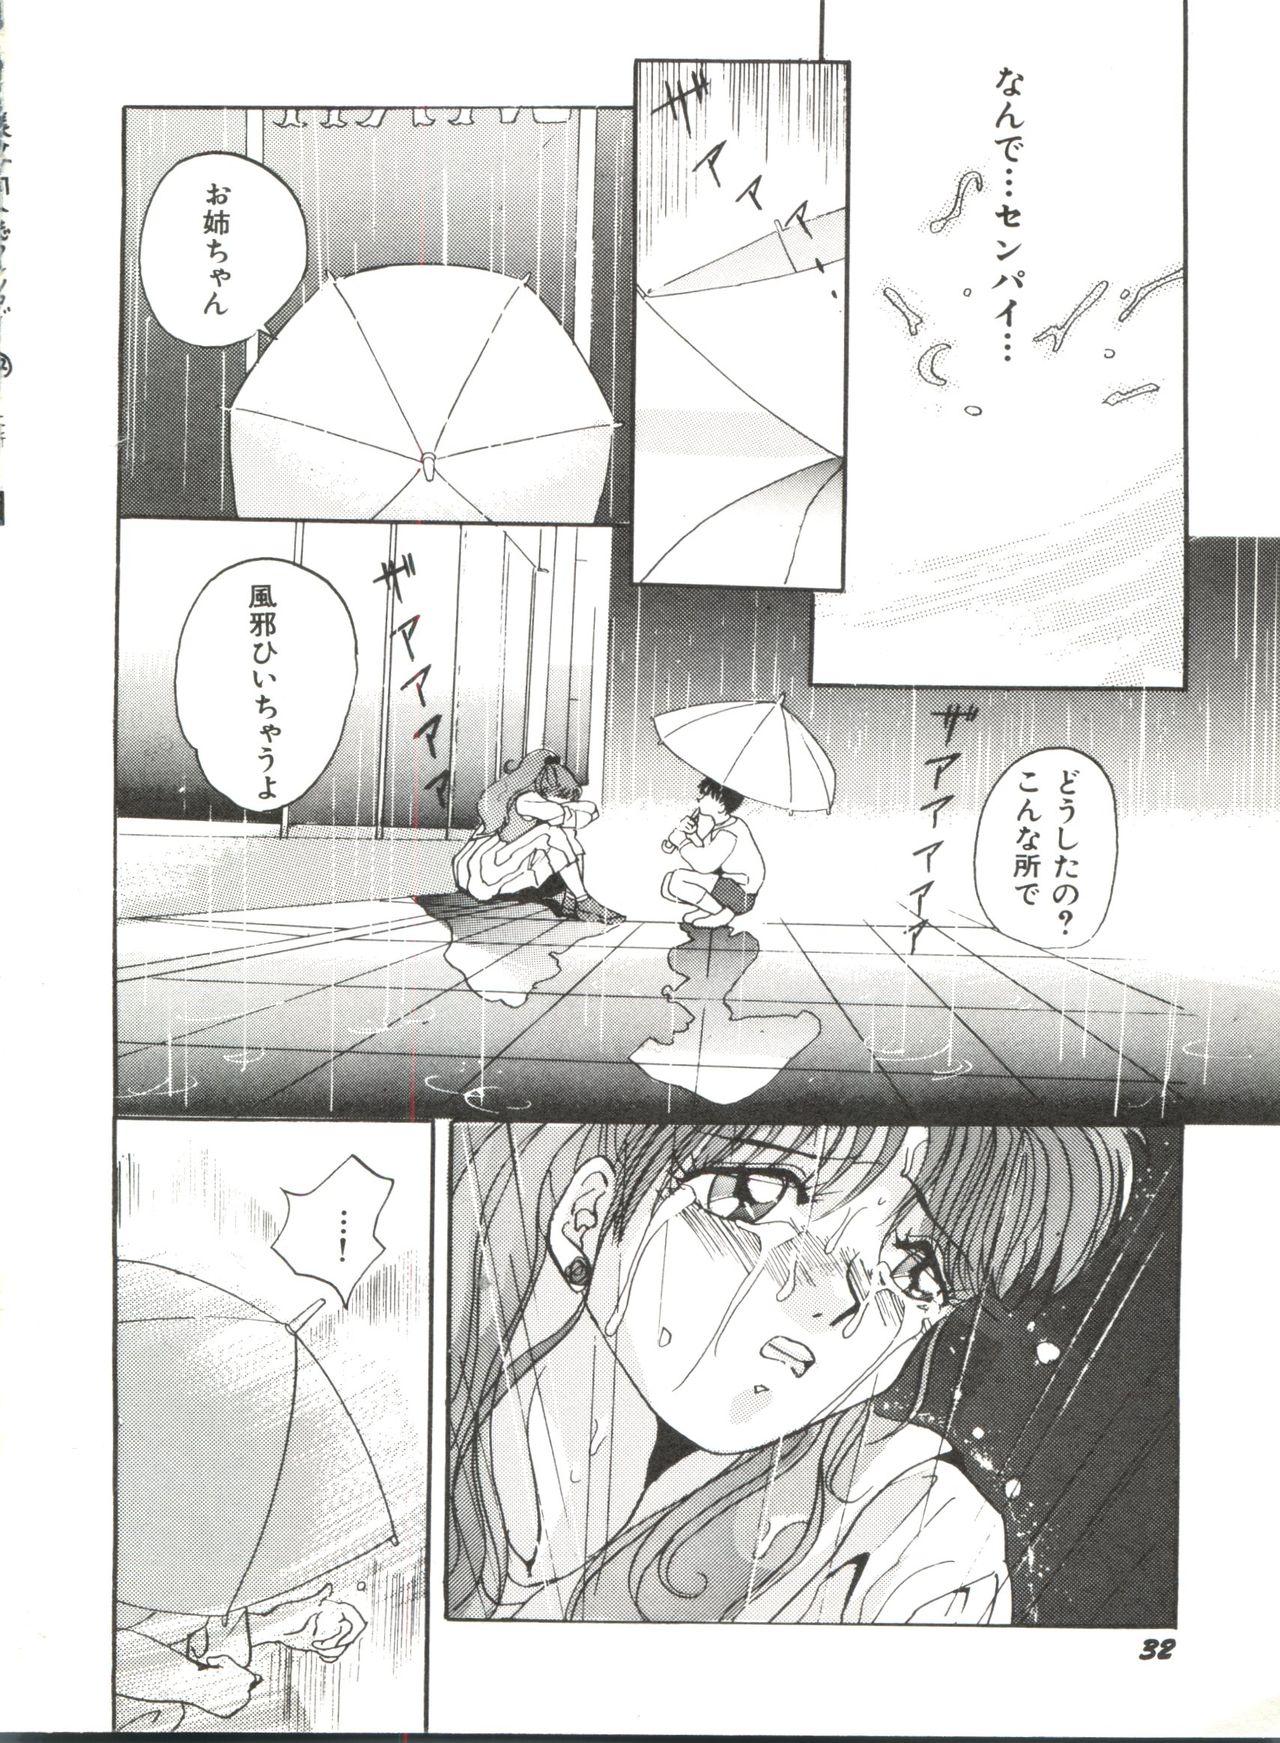 Bishoujo Doujinshi Anthology 12 - Moon Paradise 7 Tsuki no Rakuen 37